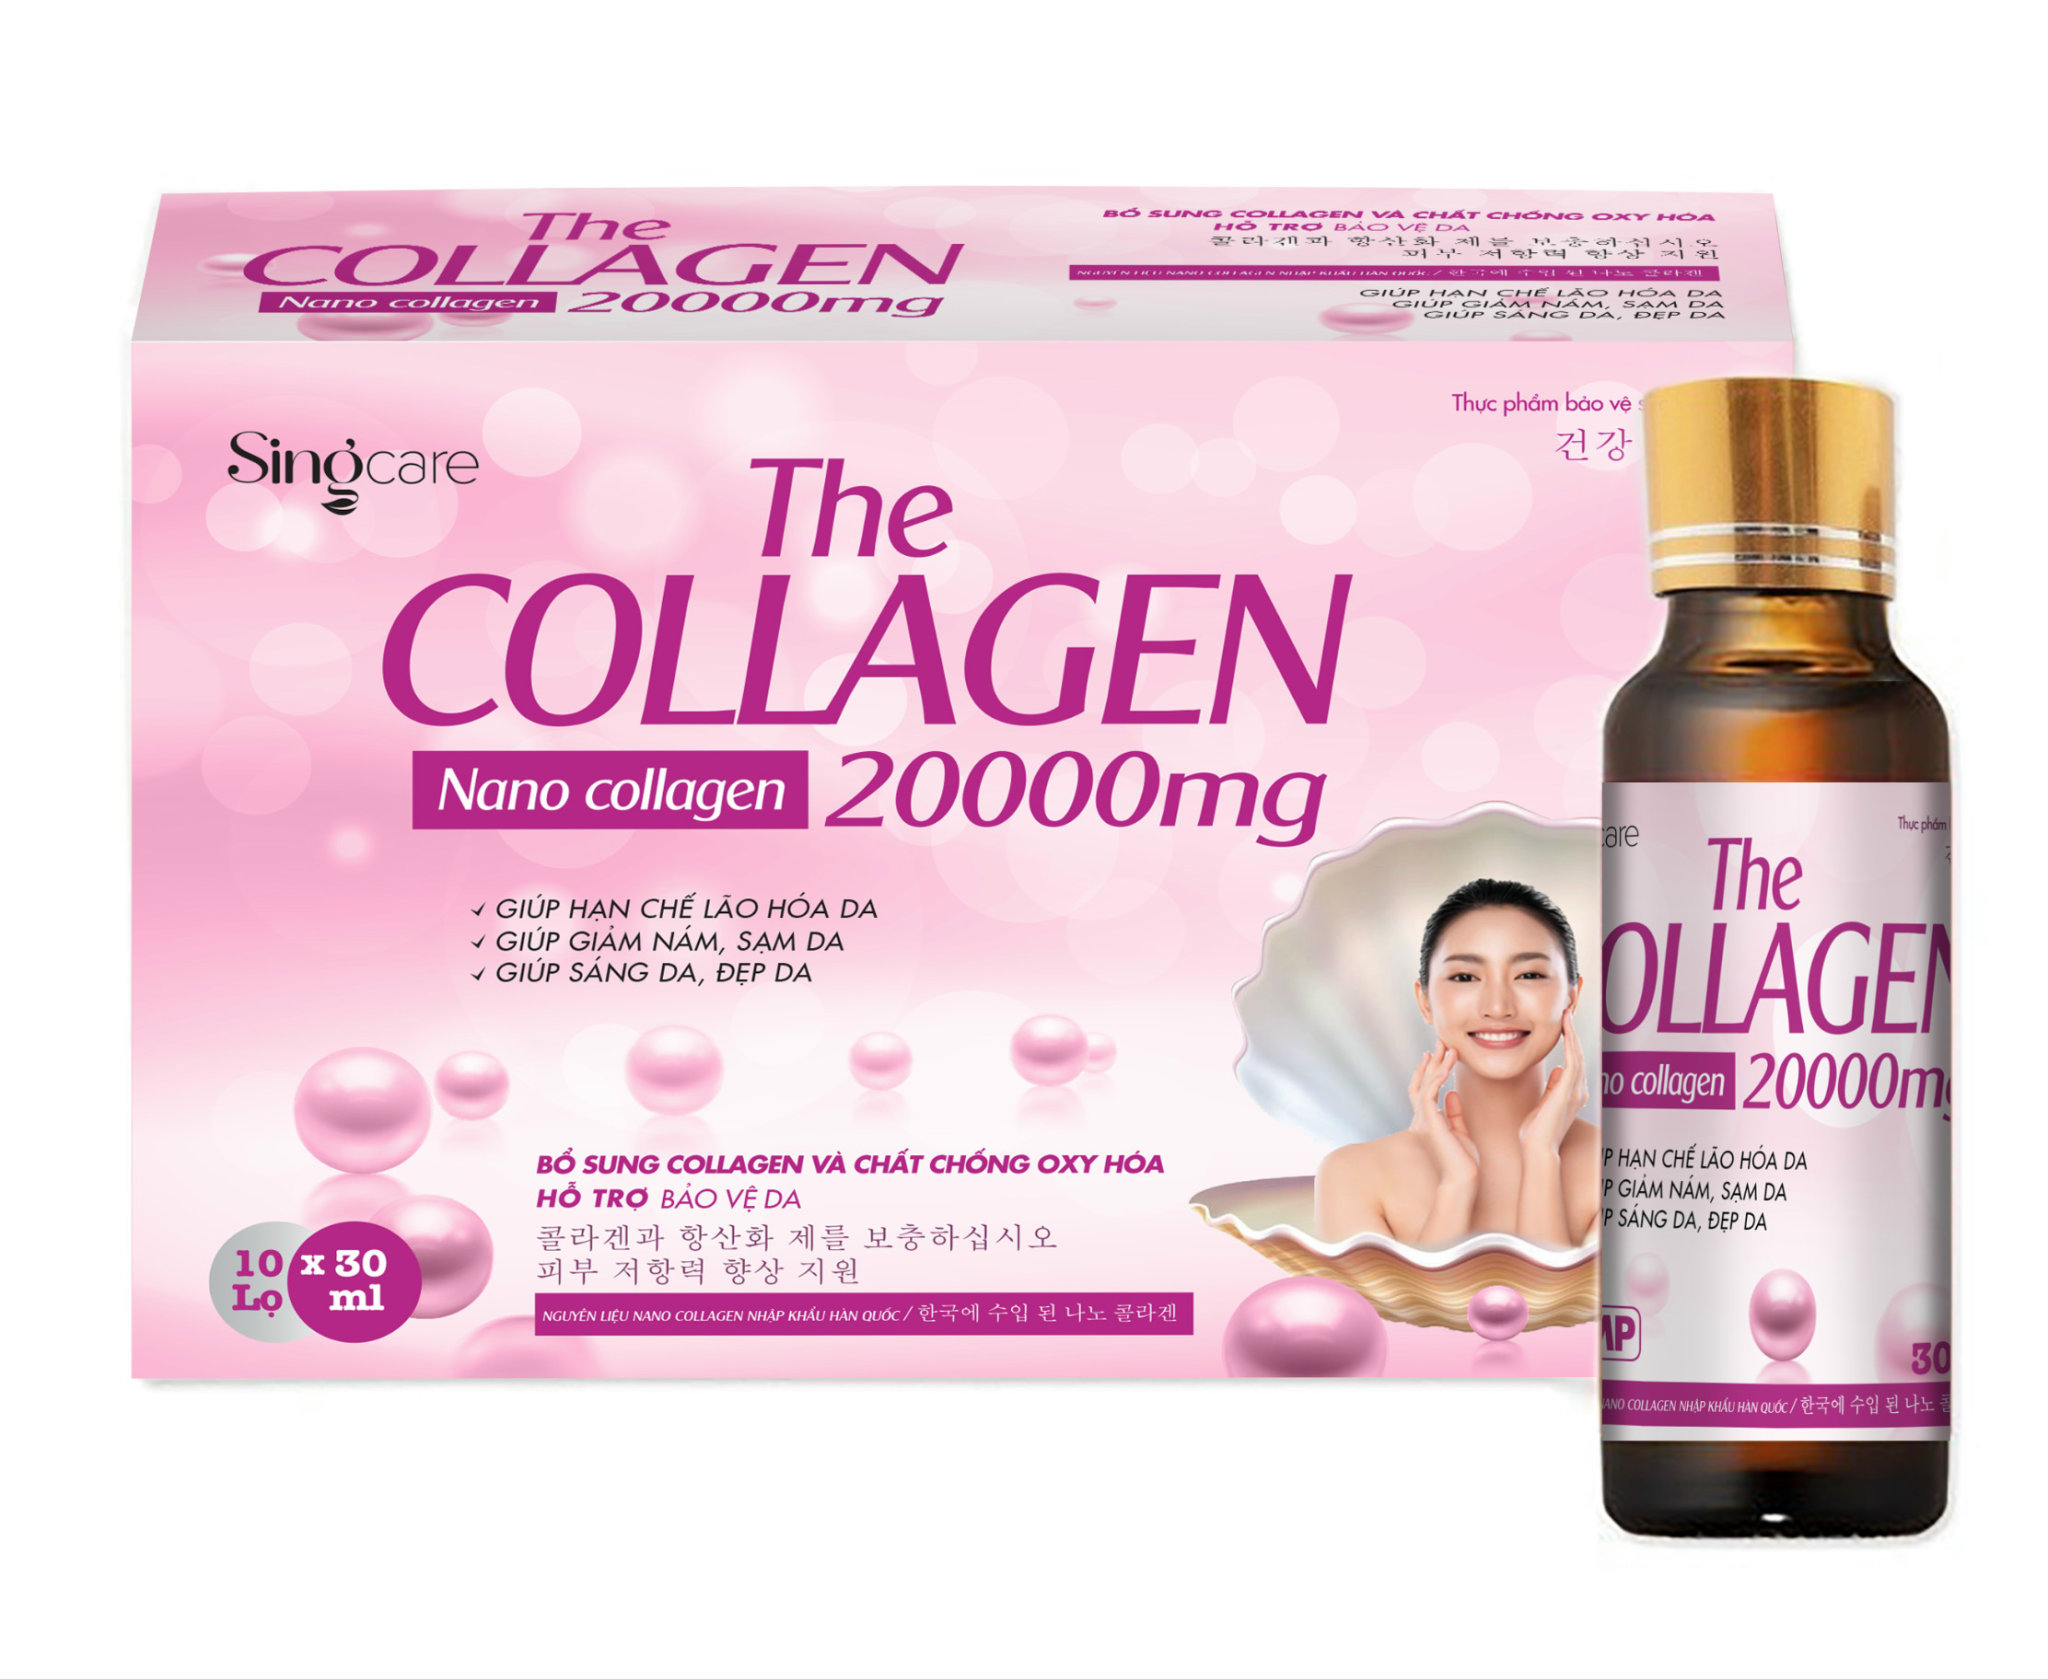 Thực phẩm bảo vệ sức khỏe The Collagen 20000mg Hộp 10 chai x 30ml (Bổ sung collagen và các chất chông oxy hóa giúp bảo vệ da, tăng tính đàn hồi, hạn chế lão hóa da) 1